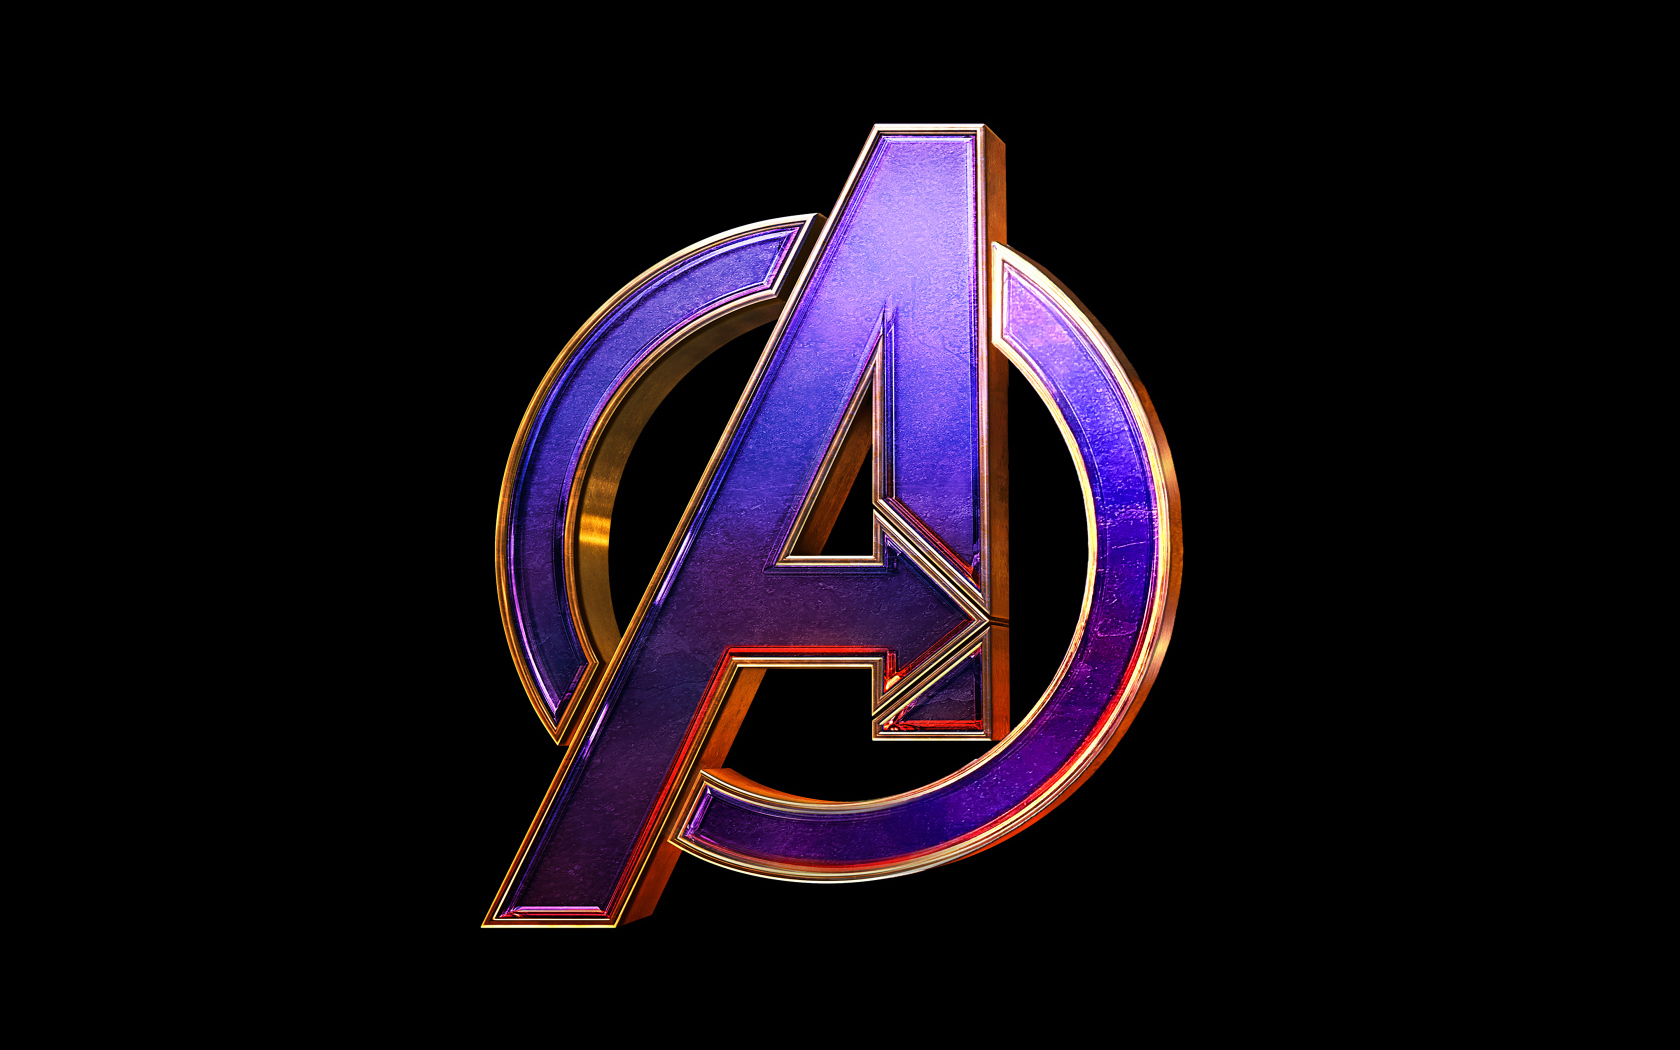 Логотип фильма Мстители: Финал  2019 года на черном фоне